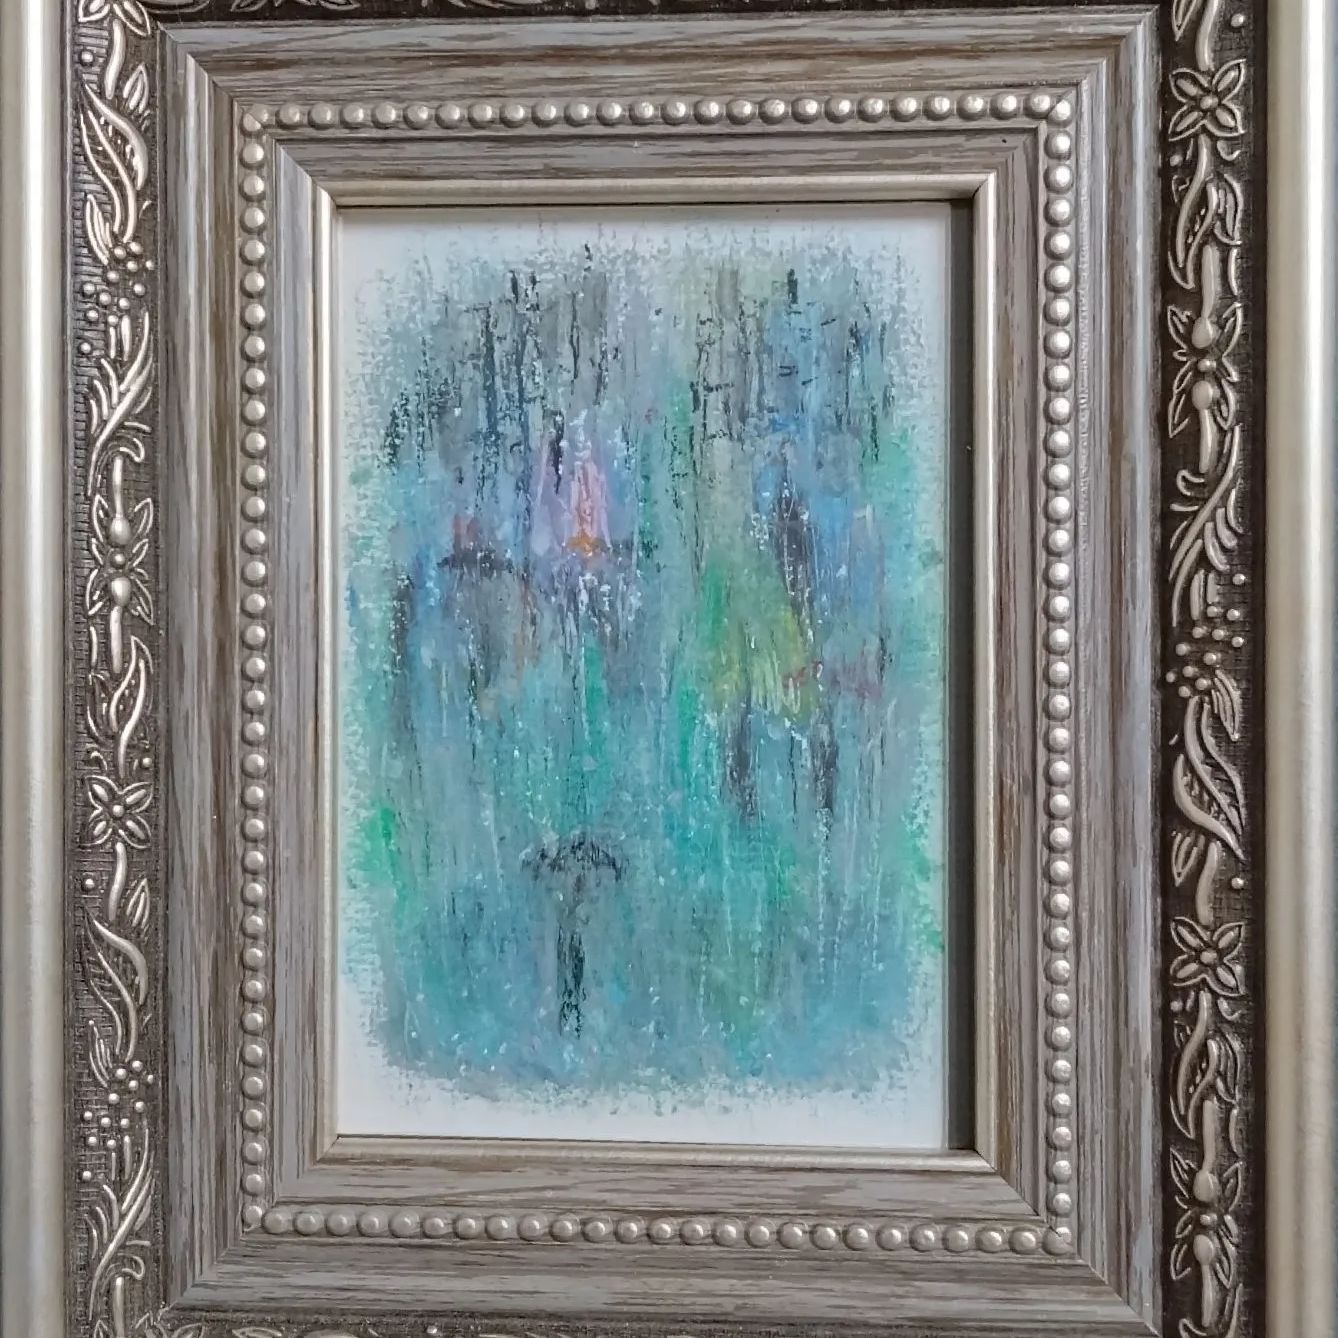 オイルパステル画 題名［pouring rain］（どしゃ降りの雨）絵画 オイルパステル 原画 クレヨン - メルカリ